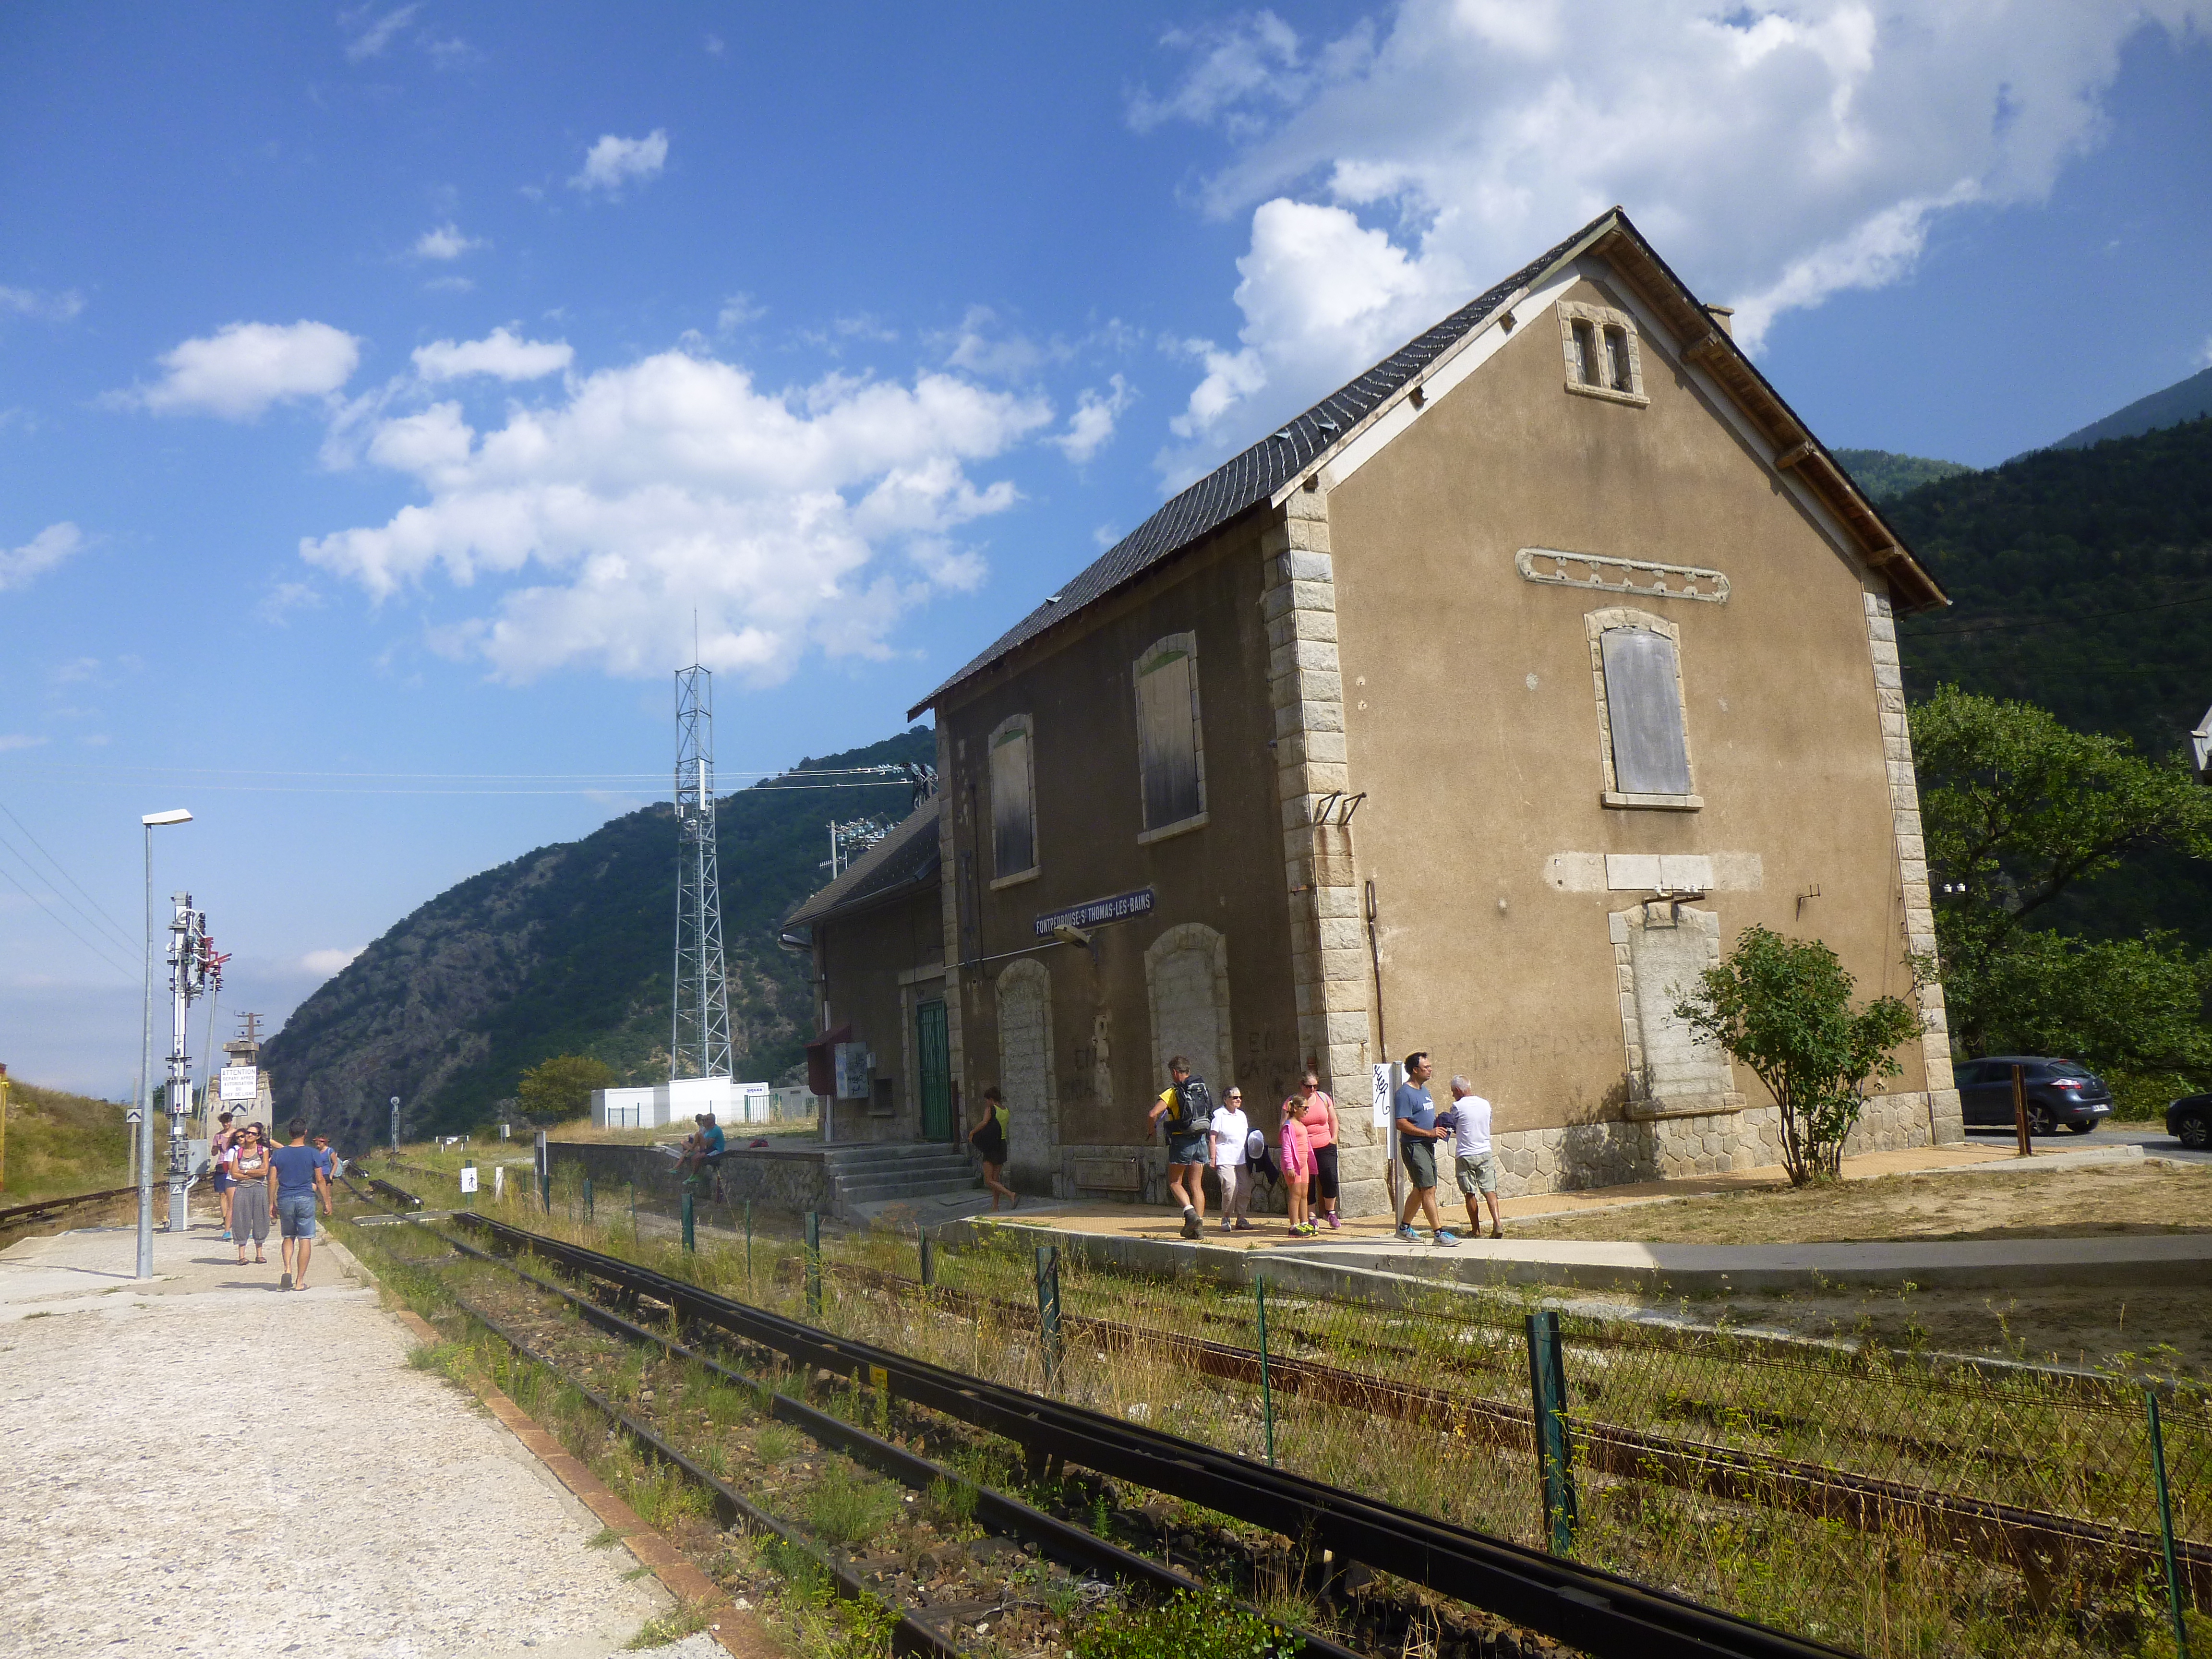 SNCF: Fontpedrosa (Fontpédrouse - St.-Thomas-les-Bains)